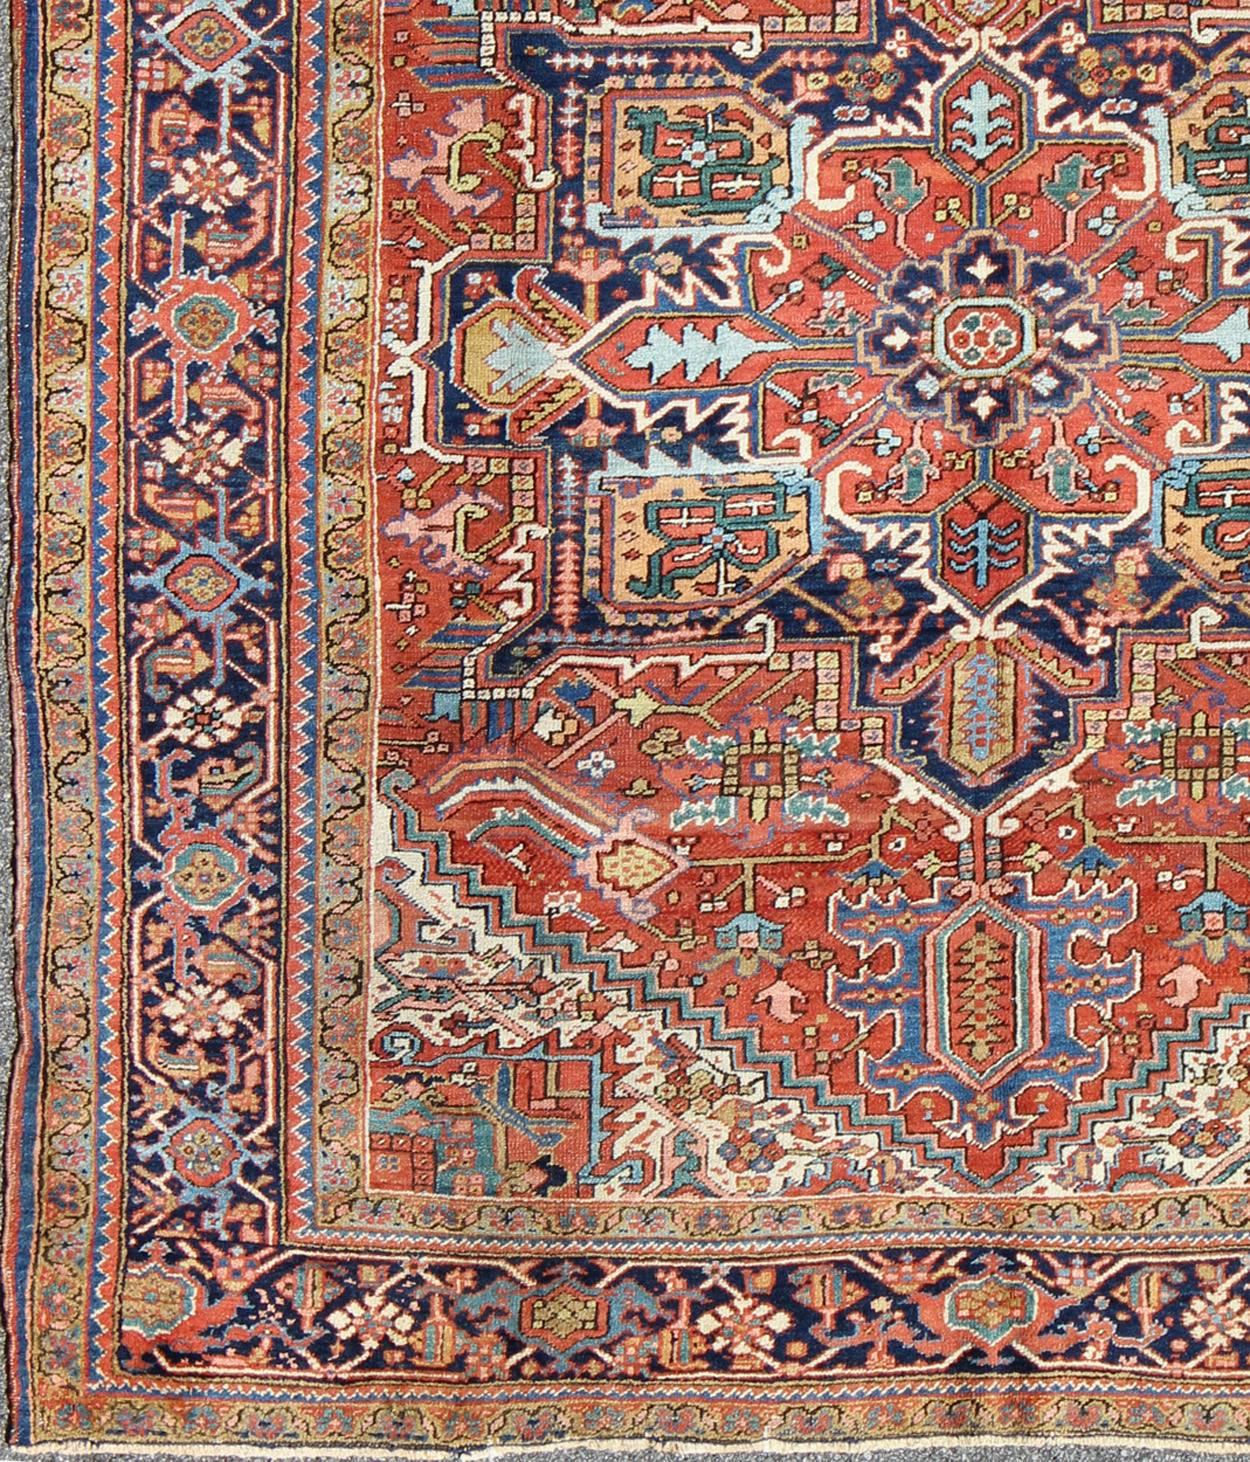  Ancien tapis persan coloré Heriz avec des motifs géométriques et un design complexe. Keivan Woven Arts / tapis D-0927, pays d'origine / type : Iran / Heriz, Heriz-Serapi , circa 1920  

 Mesures : 8'3 x 10'4                                 

Ce